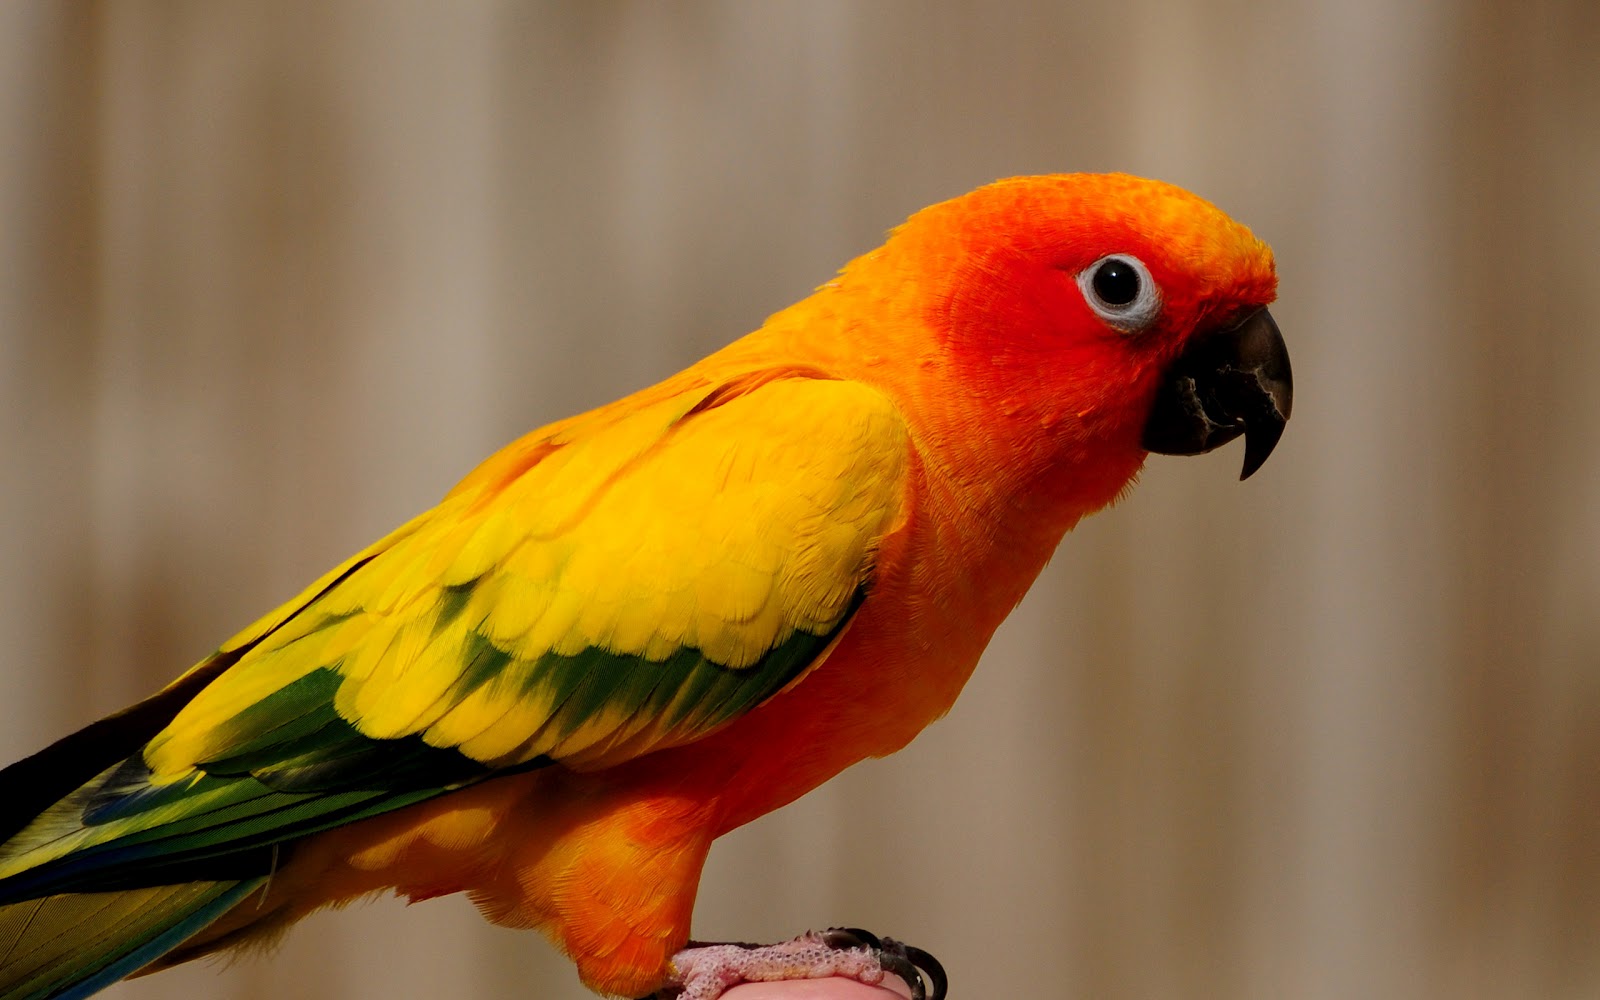 http://3.bp.blogspot.com/-6QaBtXcbAi4/UCQajLc--II/AAAAAAAAAOk/2xHql5893Pk/s1600/hd-parrot-wallpaper-with-a-orange-yellow-parrot-background-picture.jpg